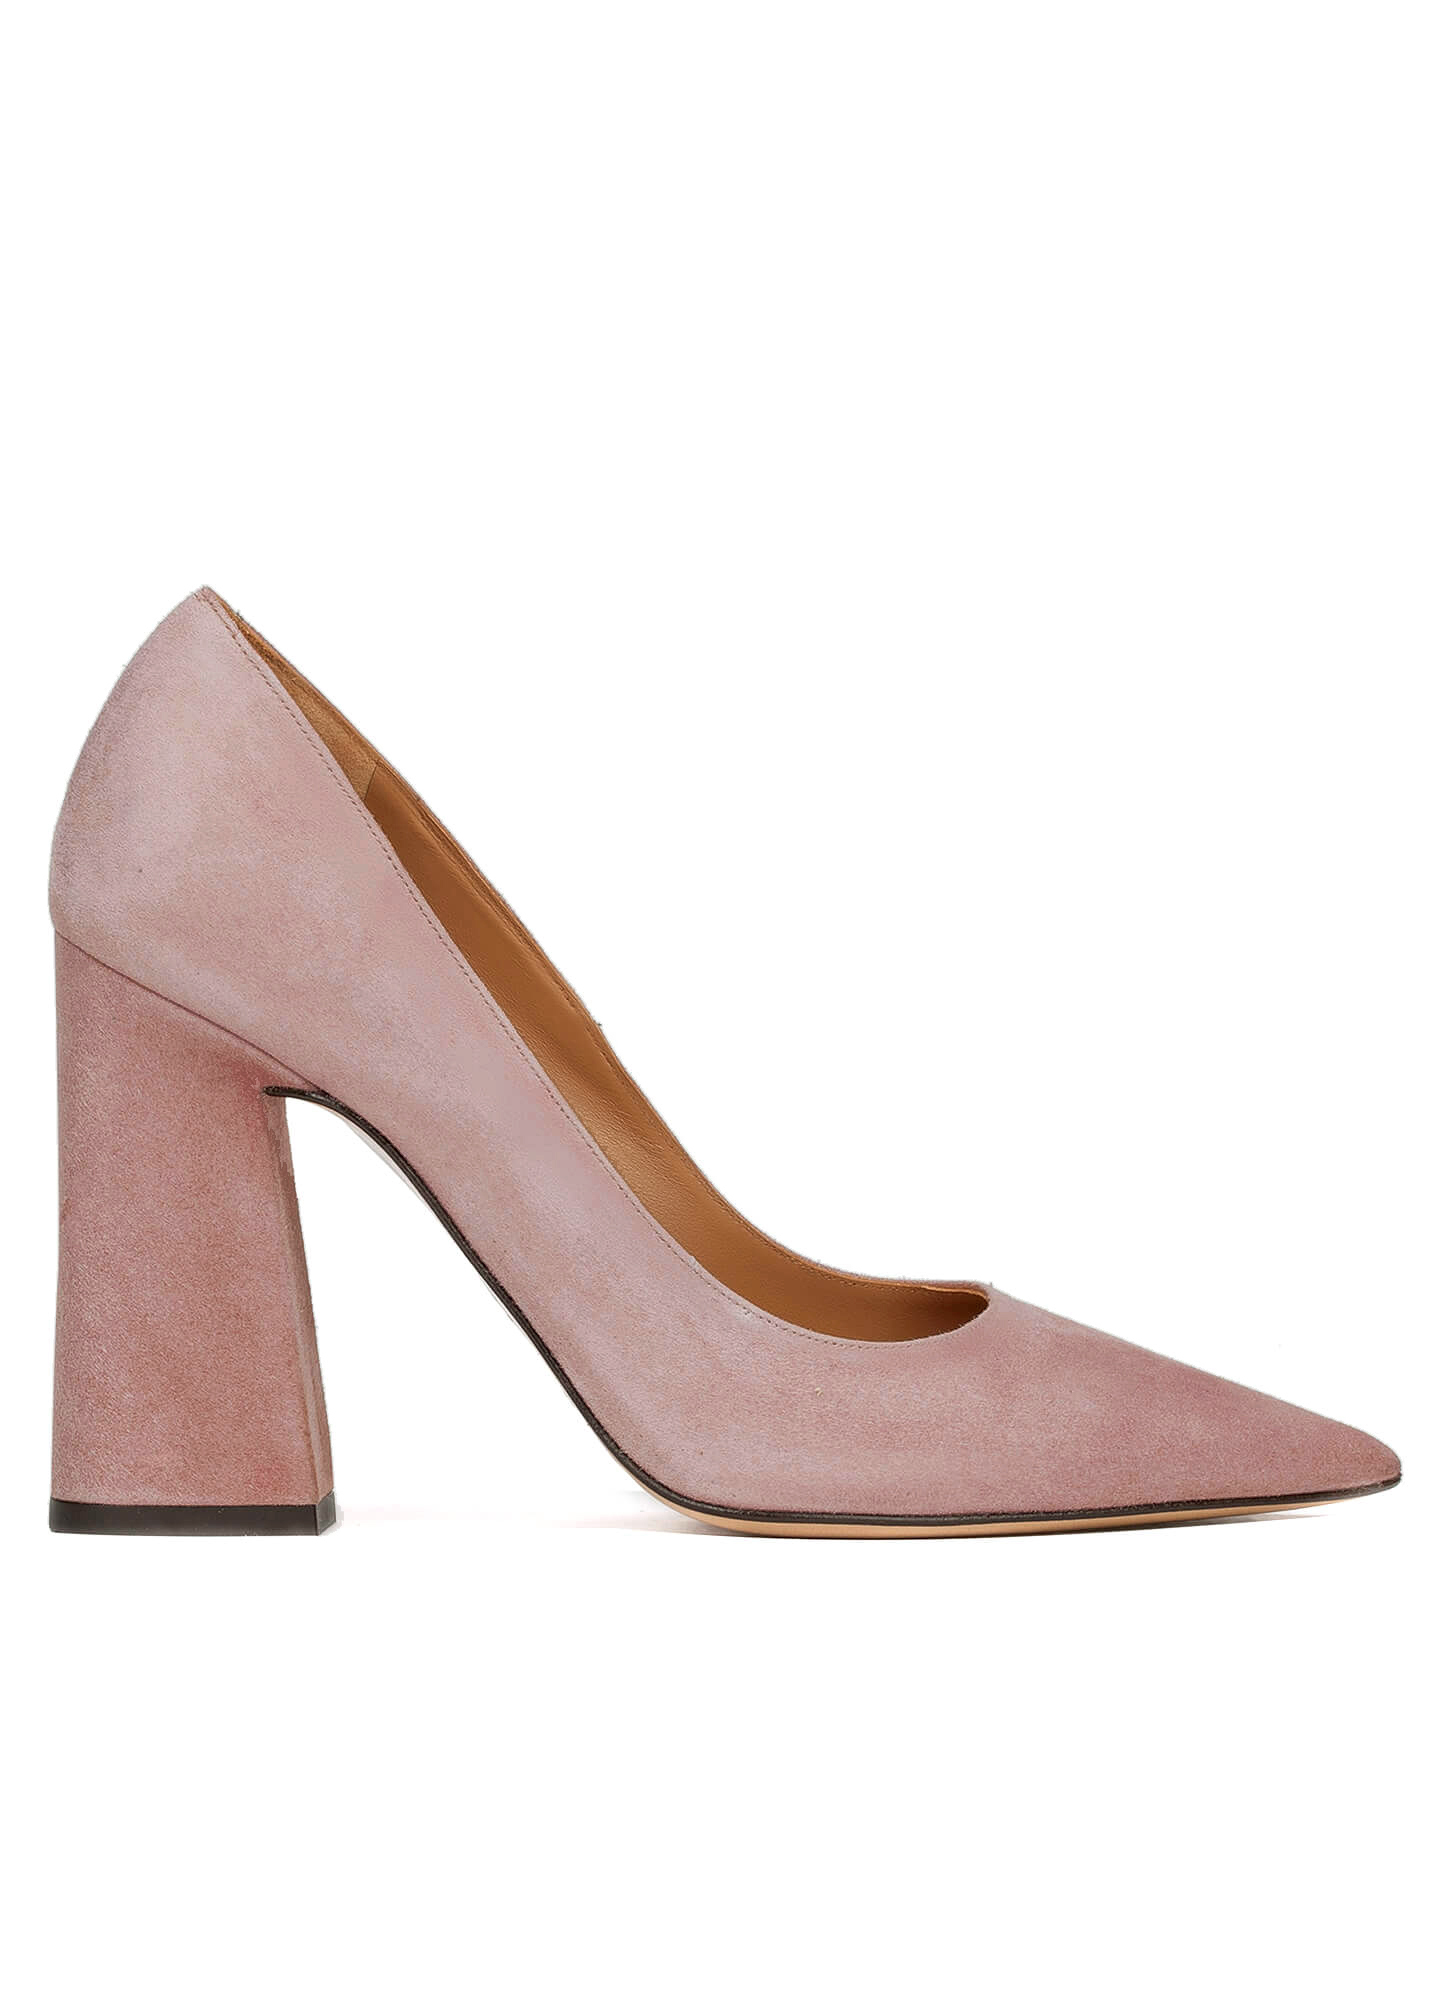 pink suede high heels